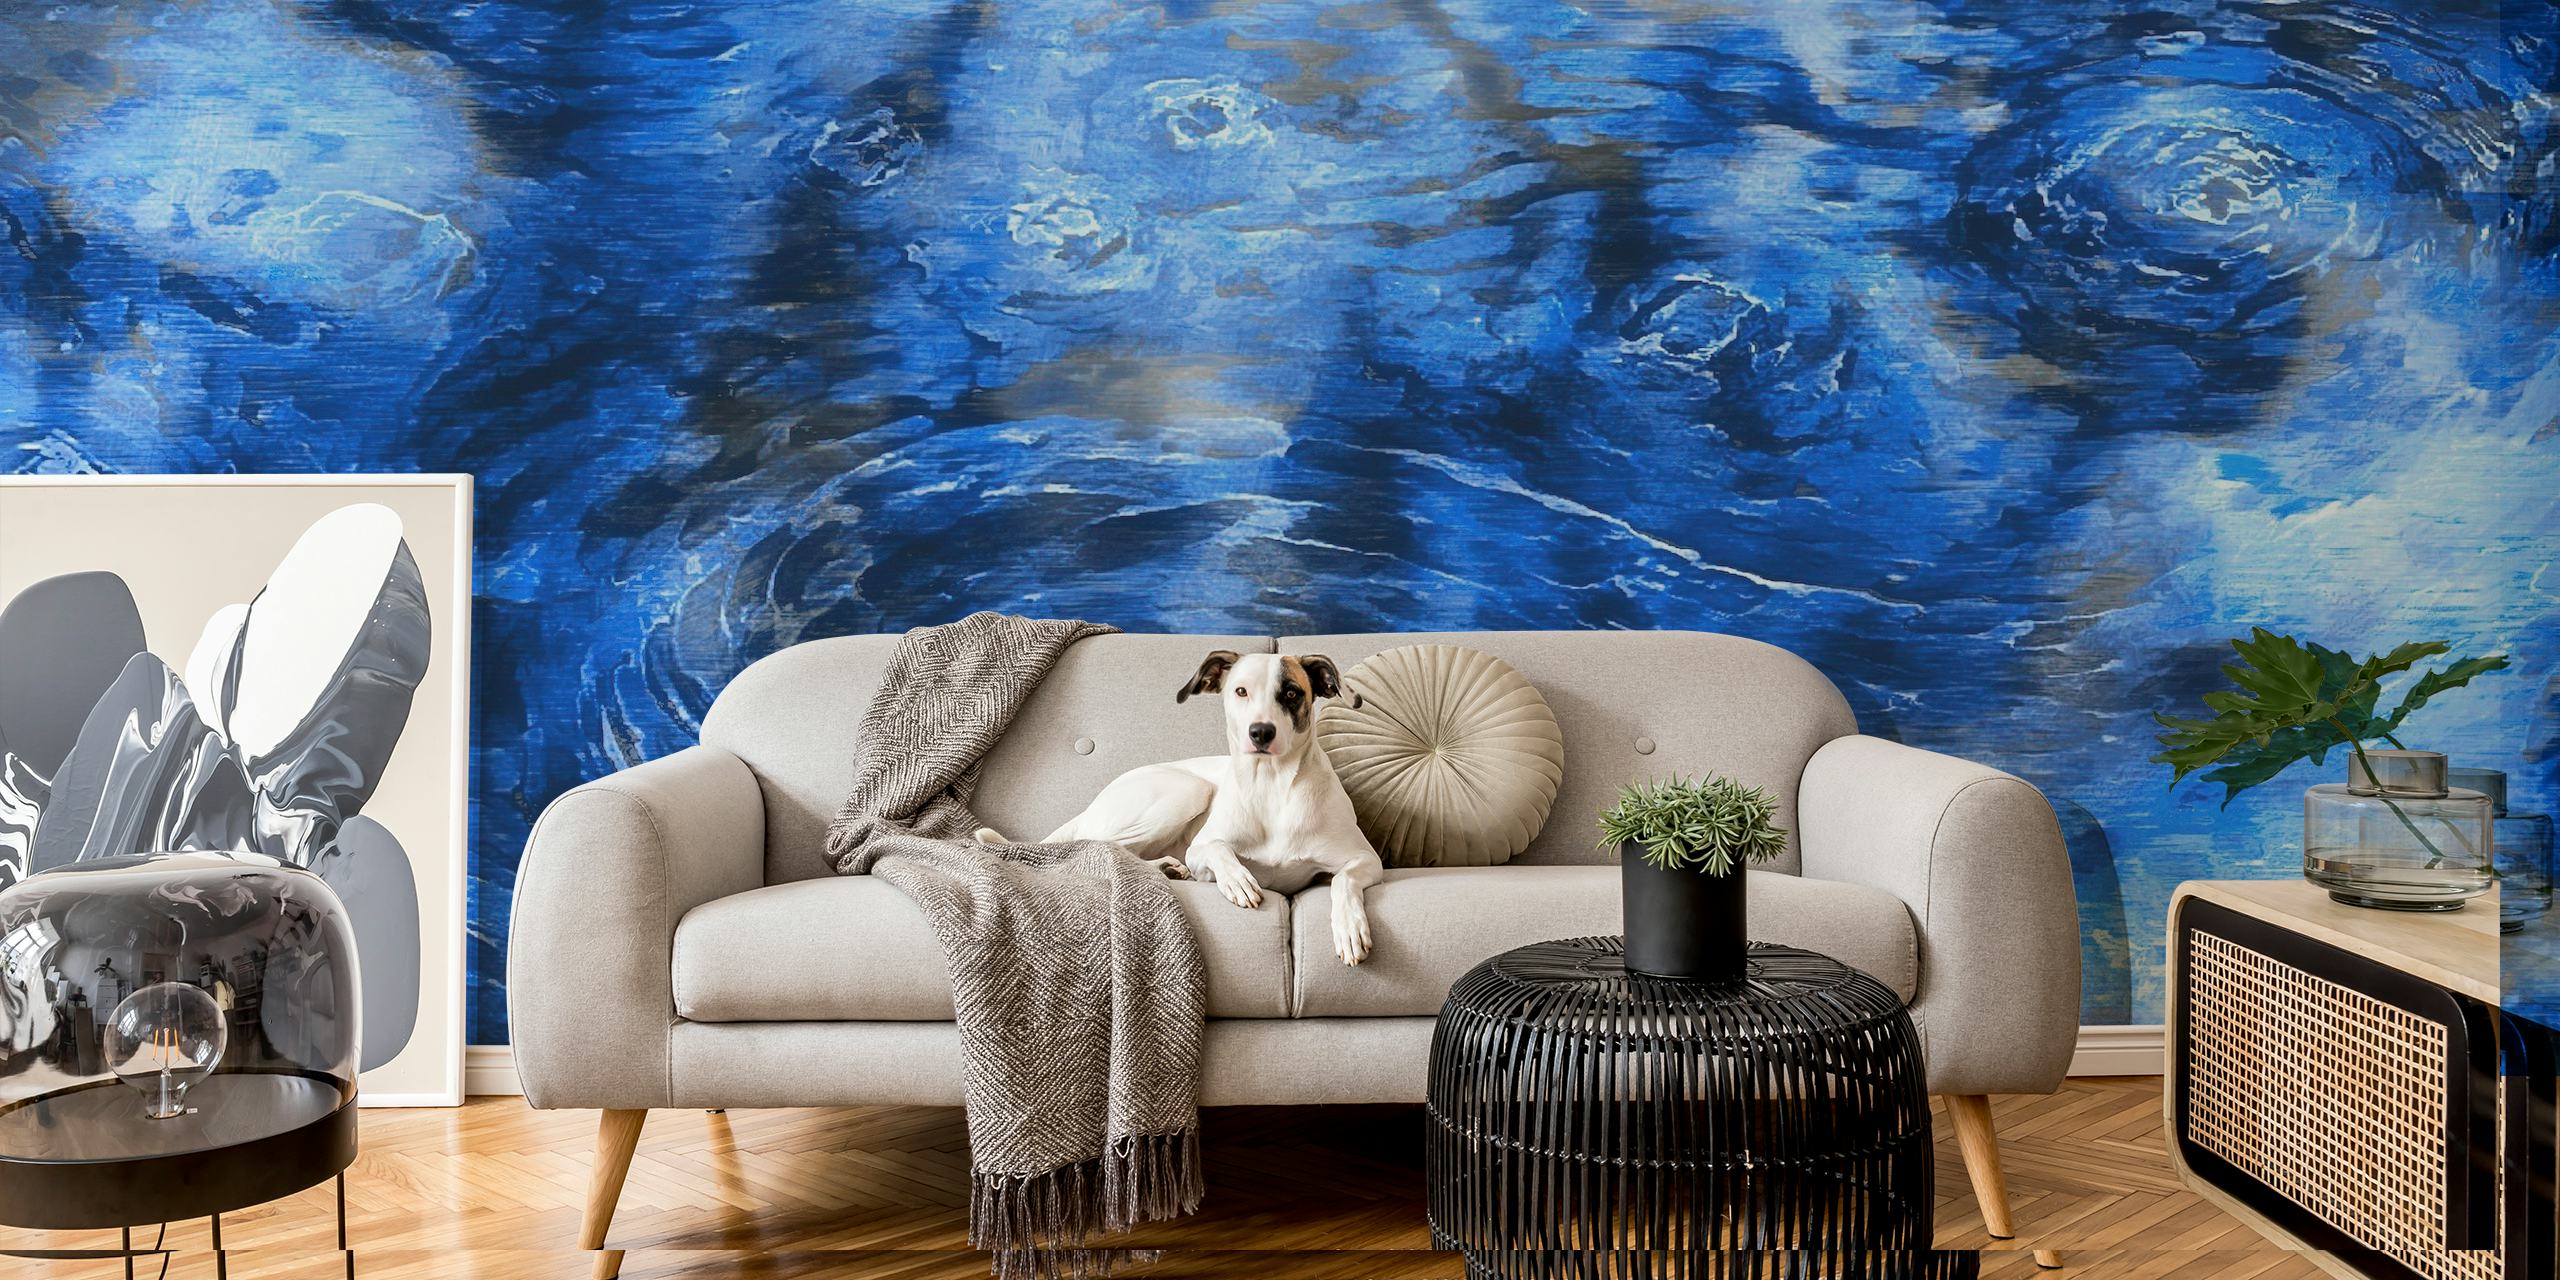 Van Gogh Clouds zidna slika u impresionističkom stilu s uskovitlanim plavim i bijelim uzorcima